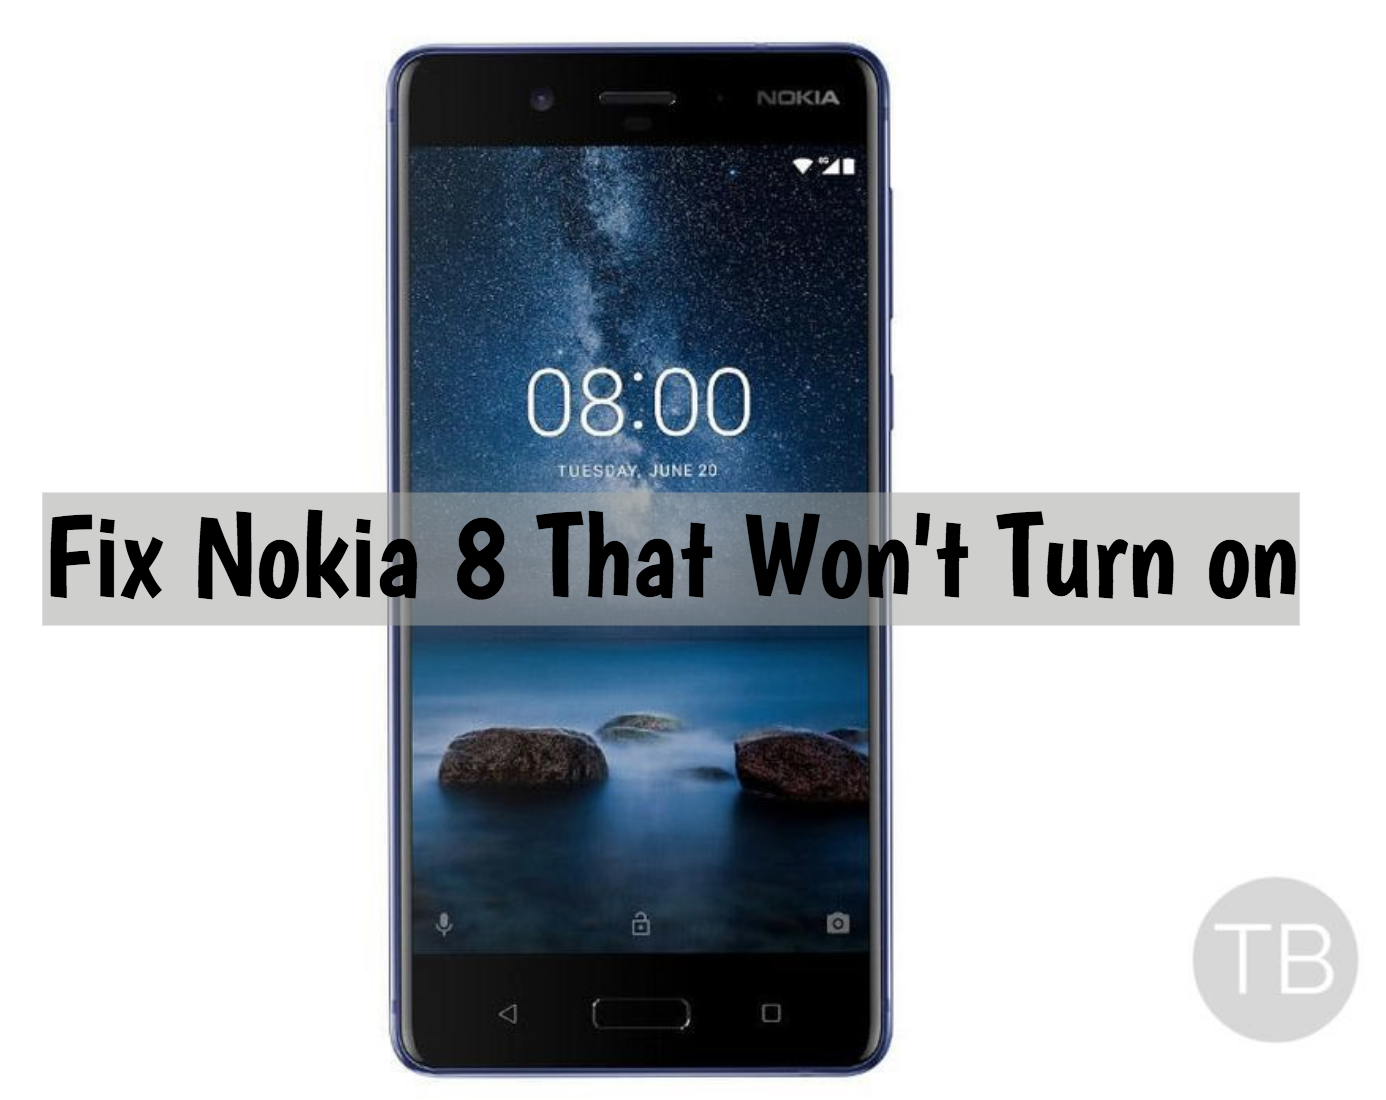 Fix Nokia 8 That Won't Turn on